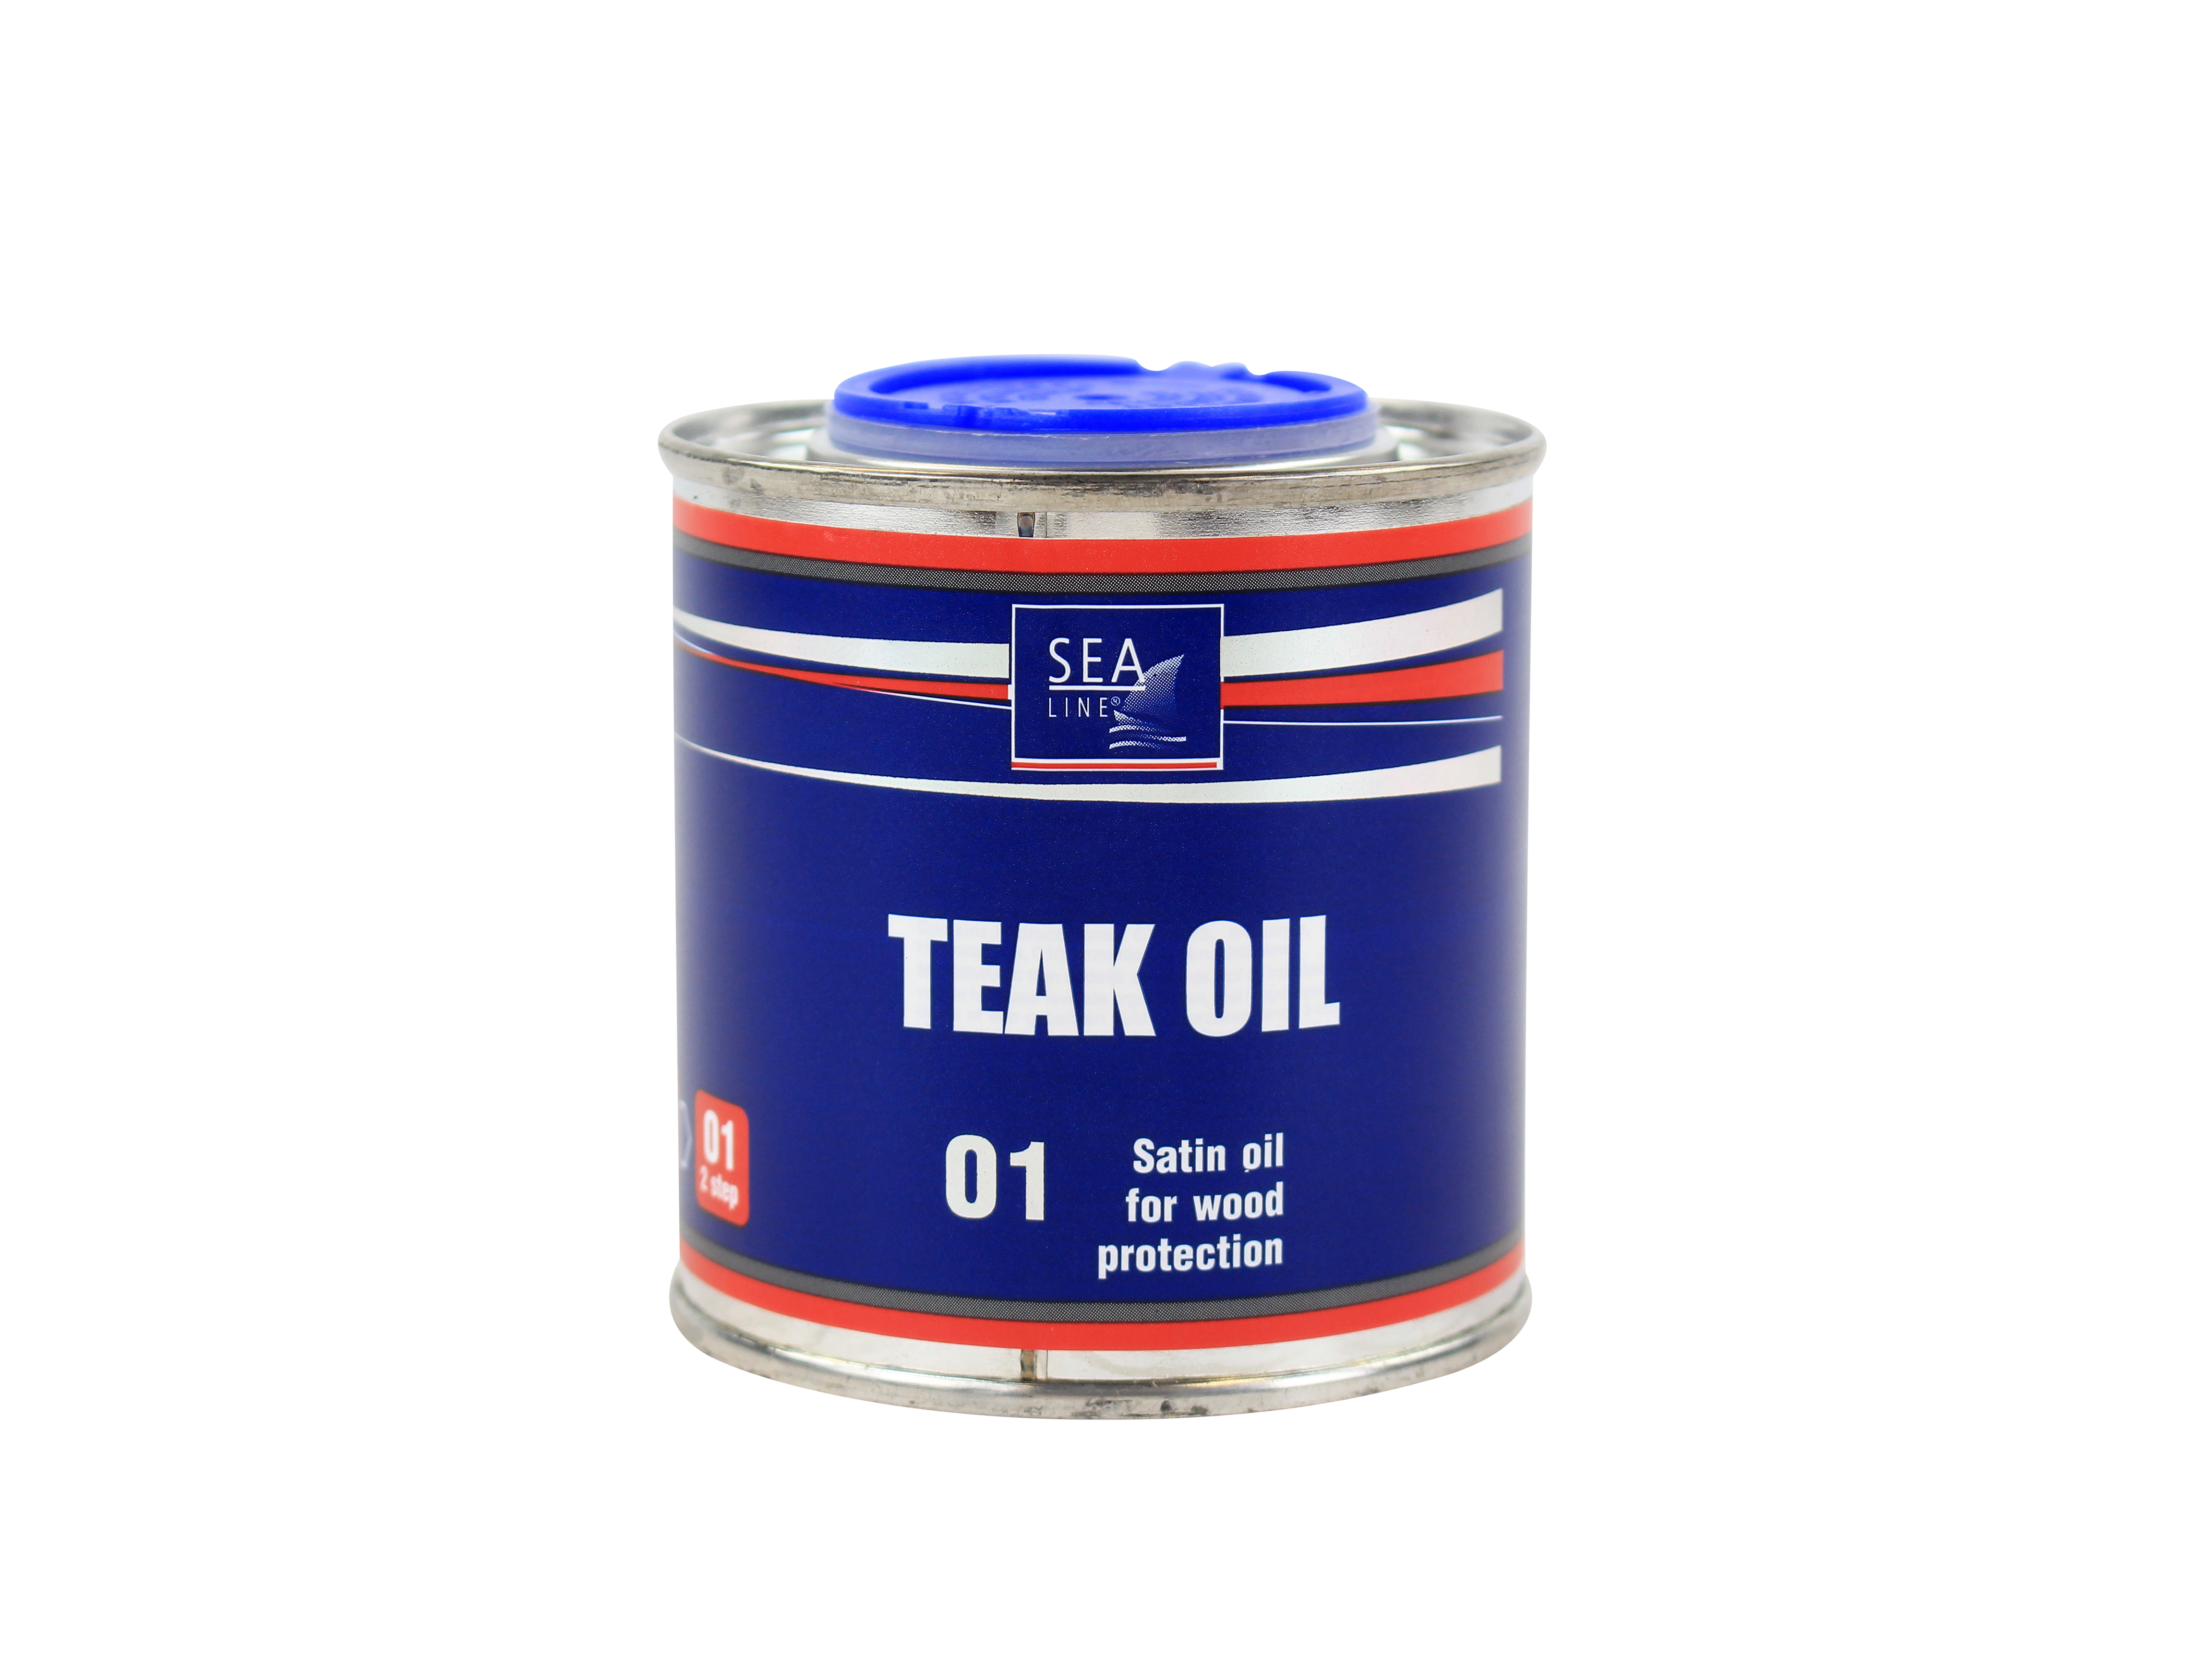 Oil for wood - teak oil